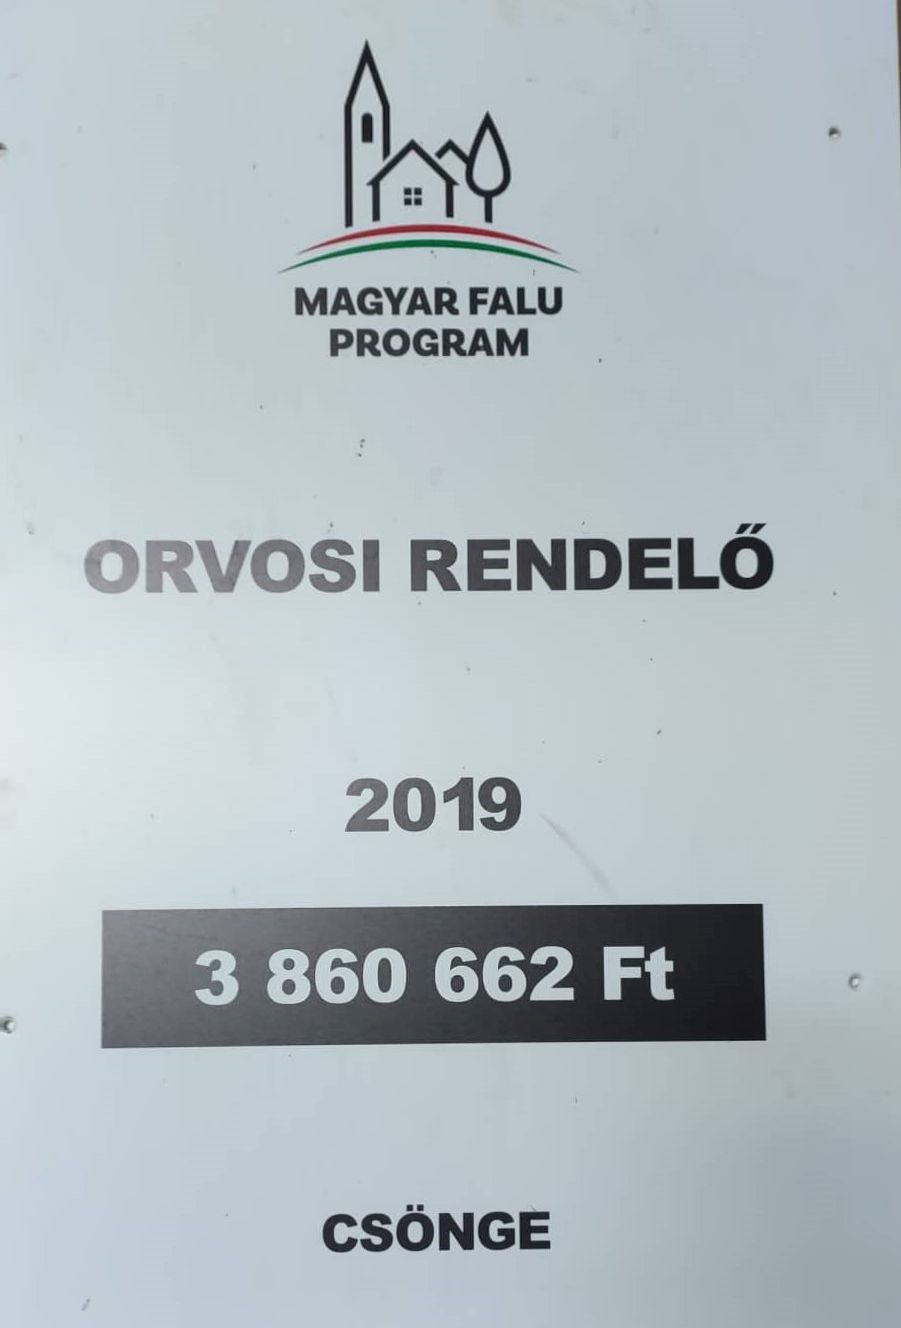 Magyar Falu Program, Csönge